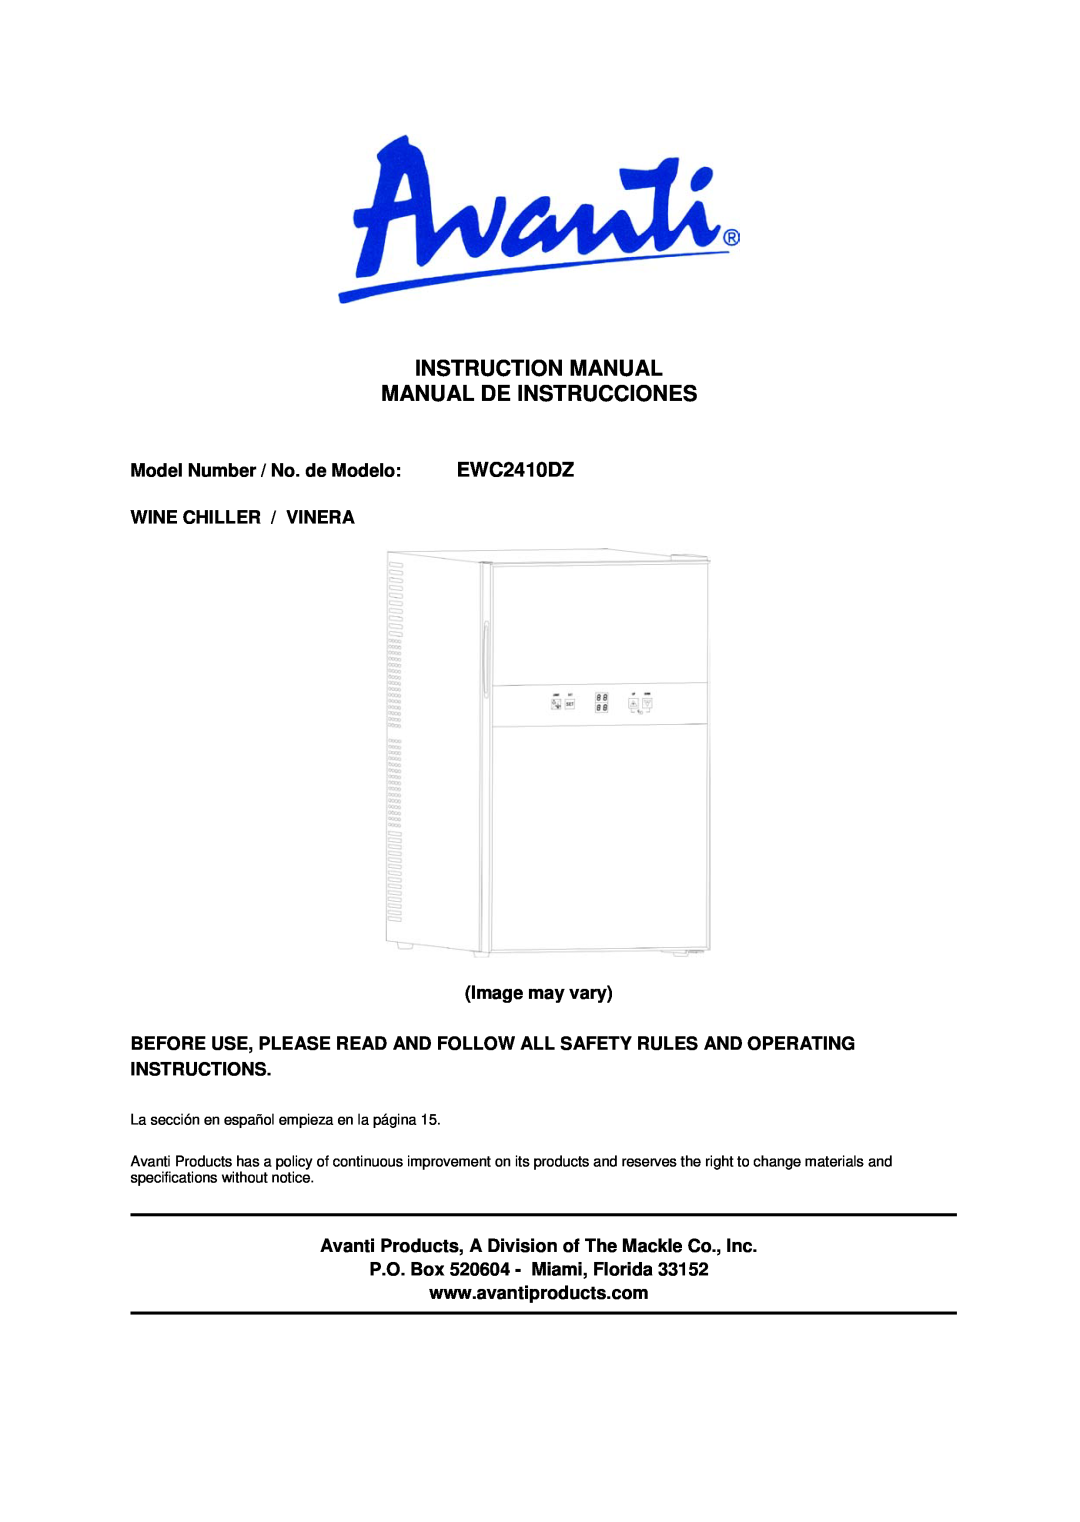 Avanti EWC2410DZ instruction manual Instruction Manual Manual De Instrucciones, Model Number / No. de Modelo 